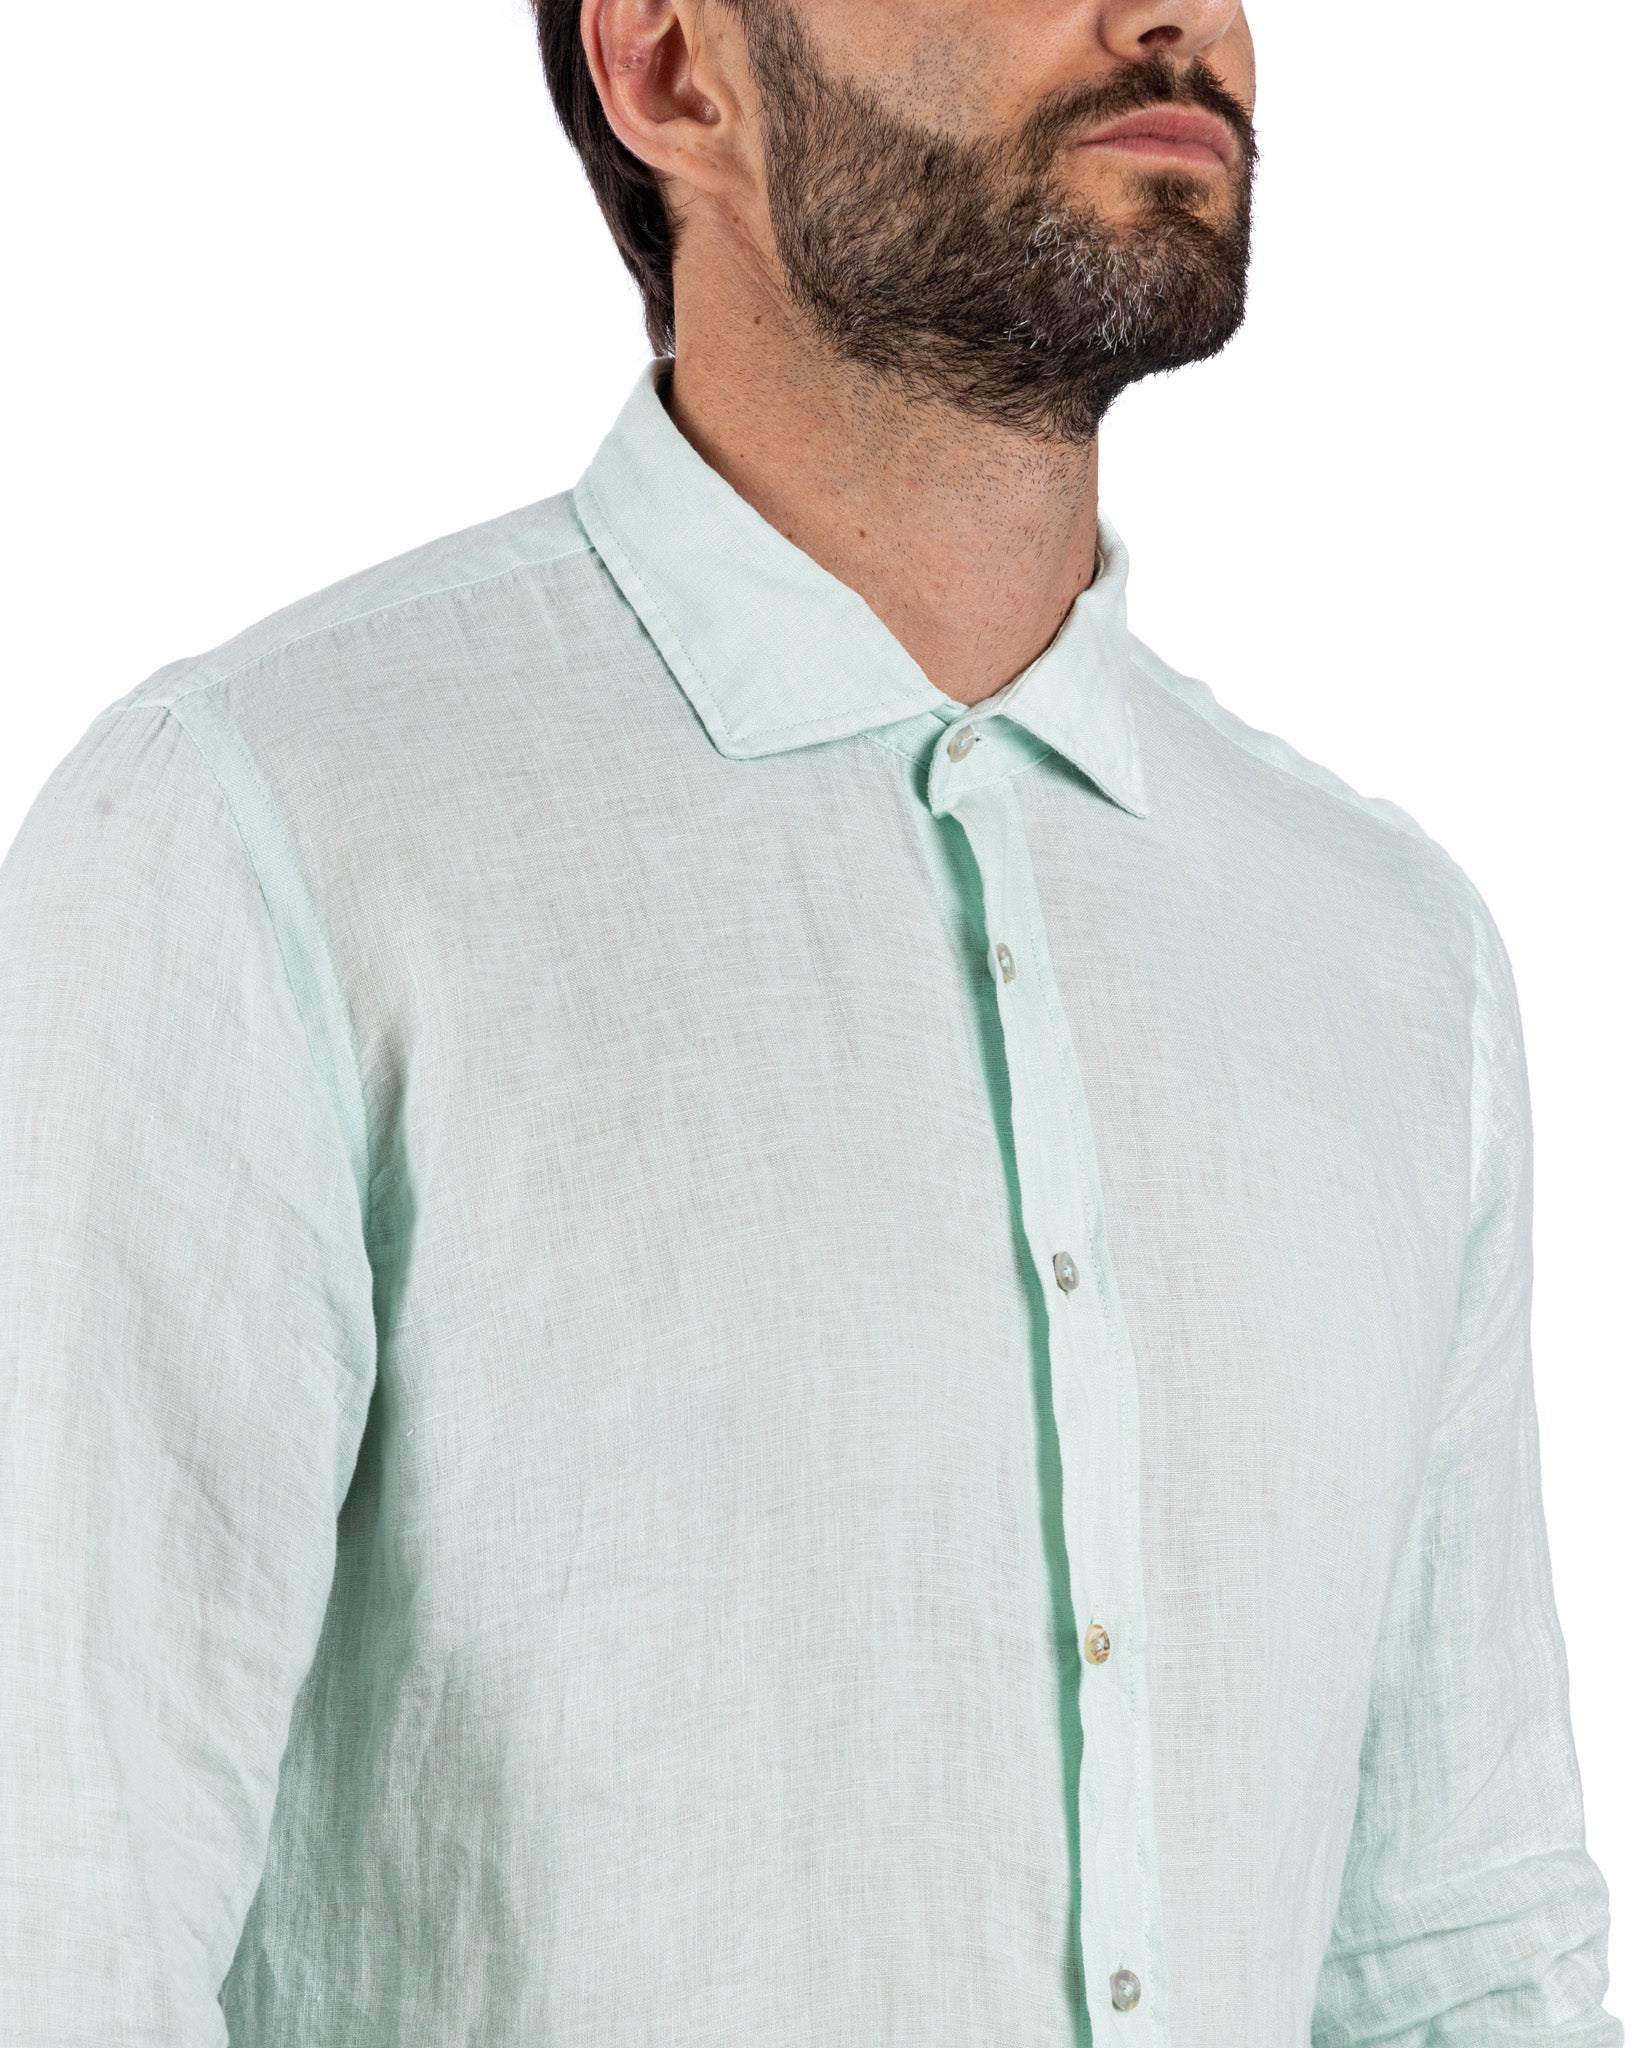 Montecarlo - light green pure linen shirt